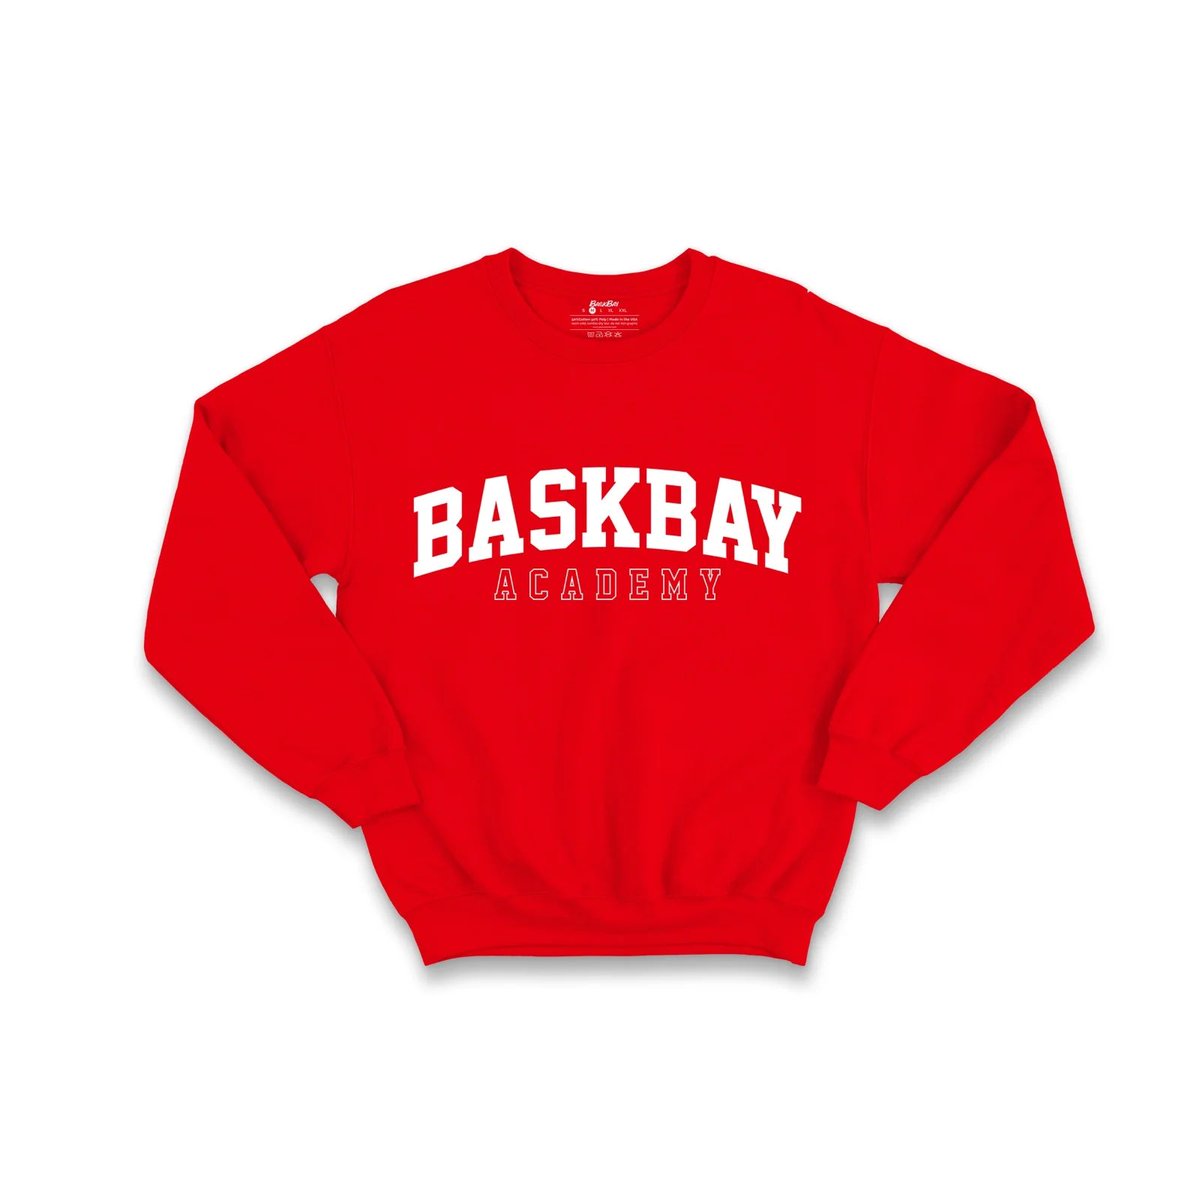 Shop: baskbaysa.co.za